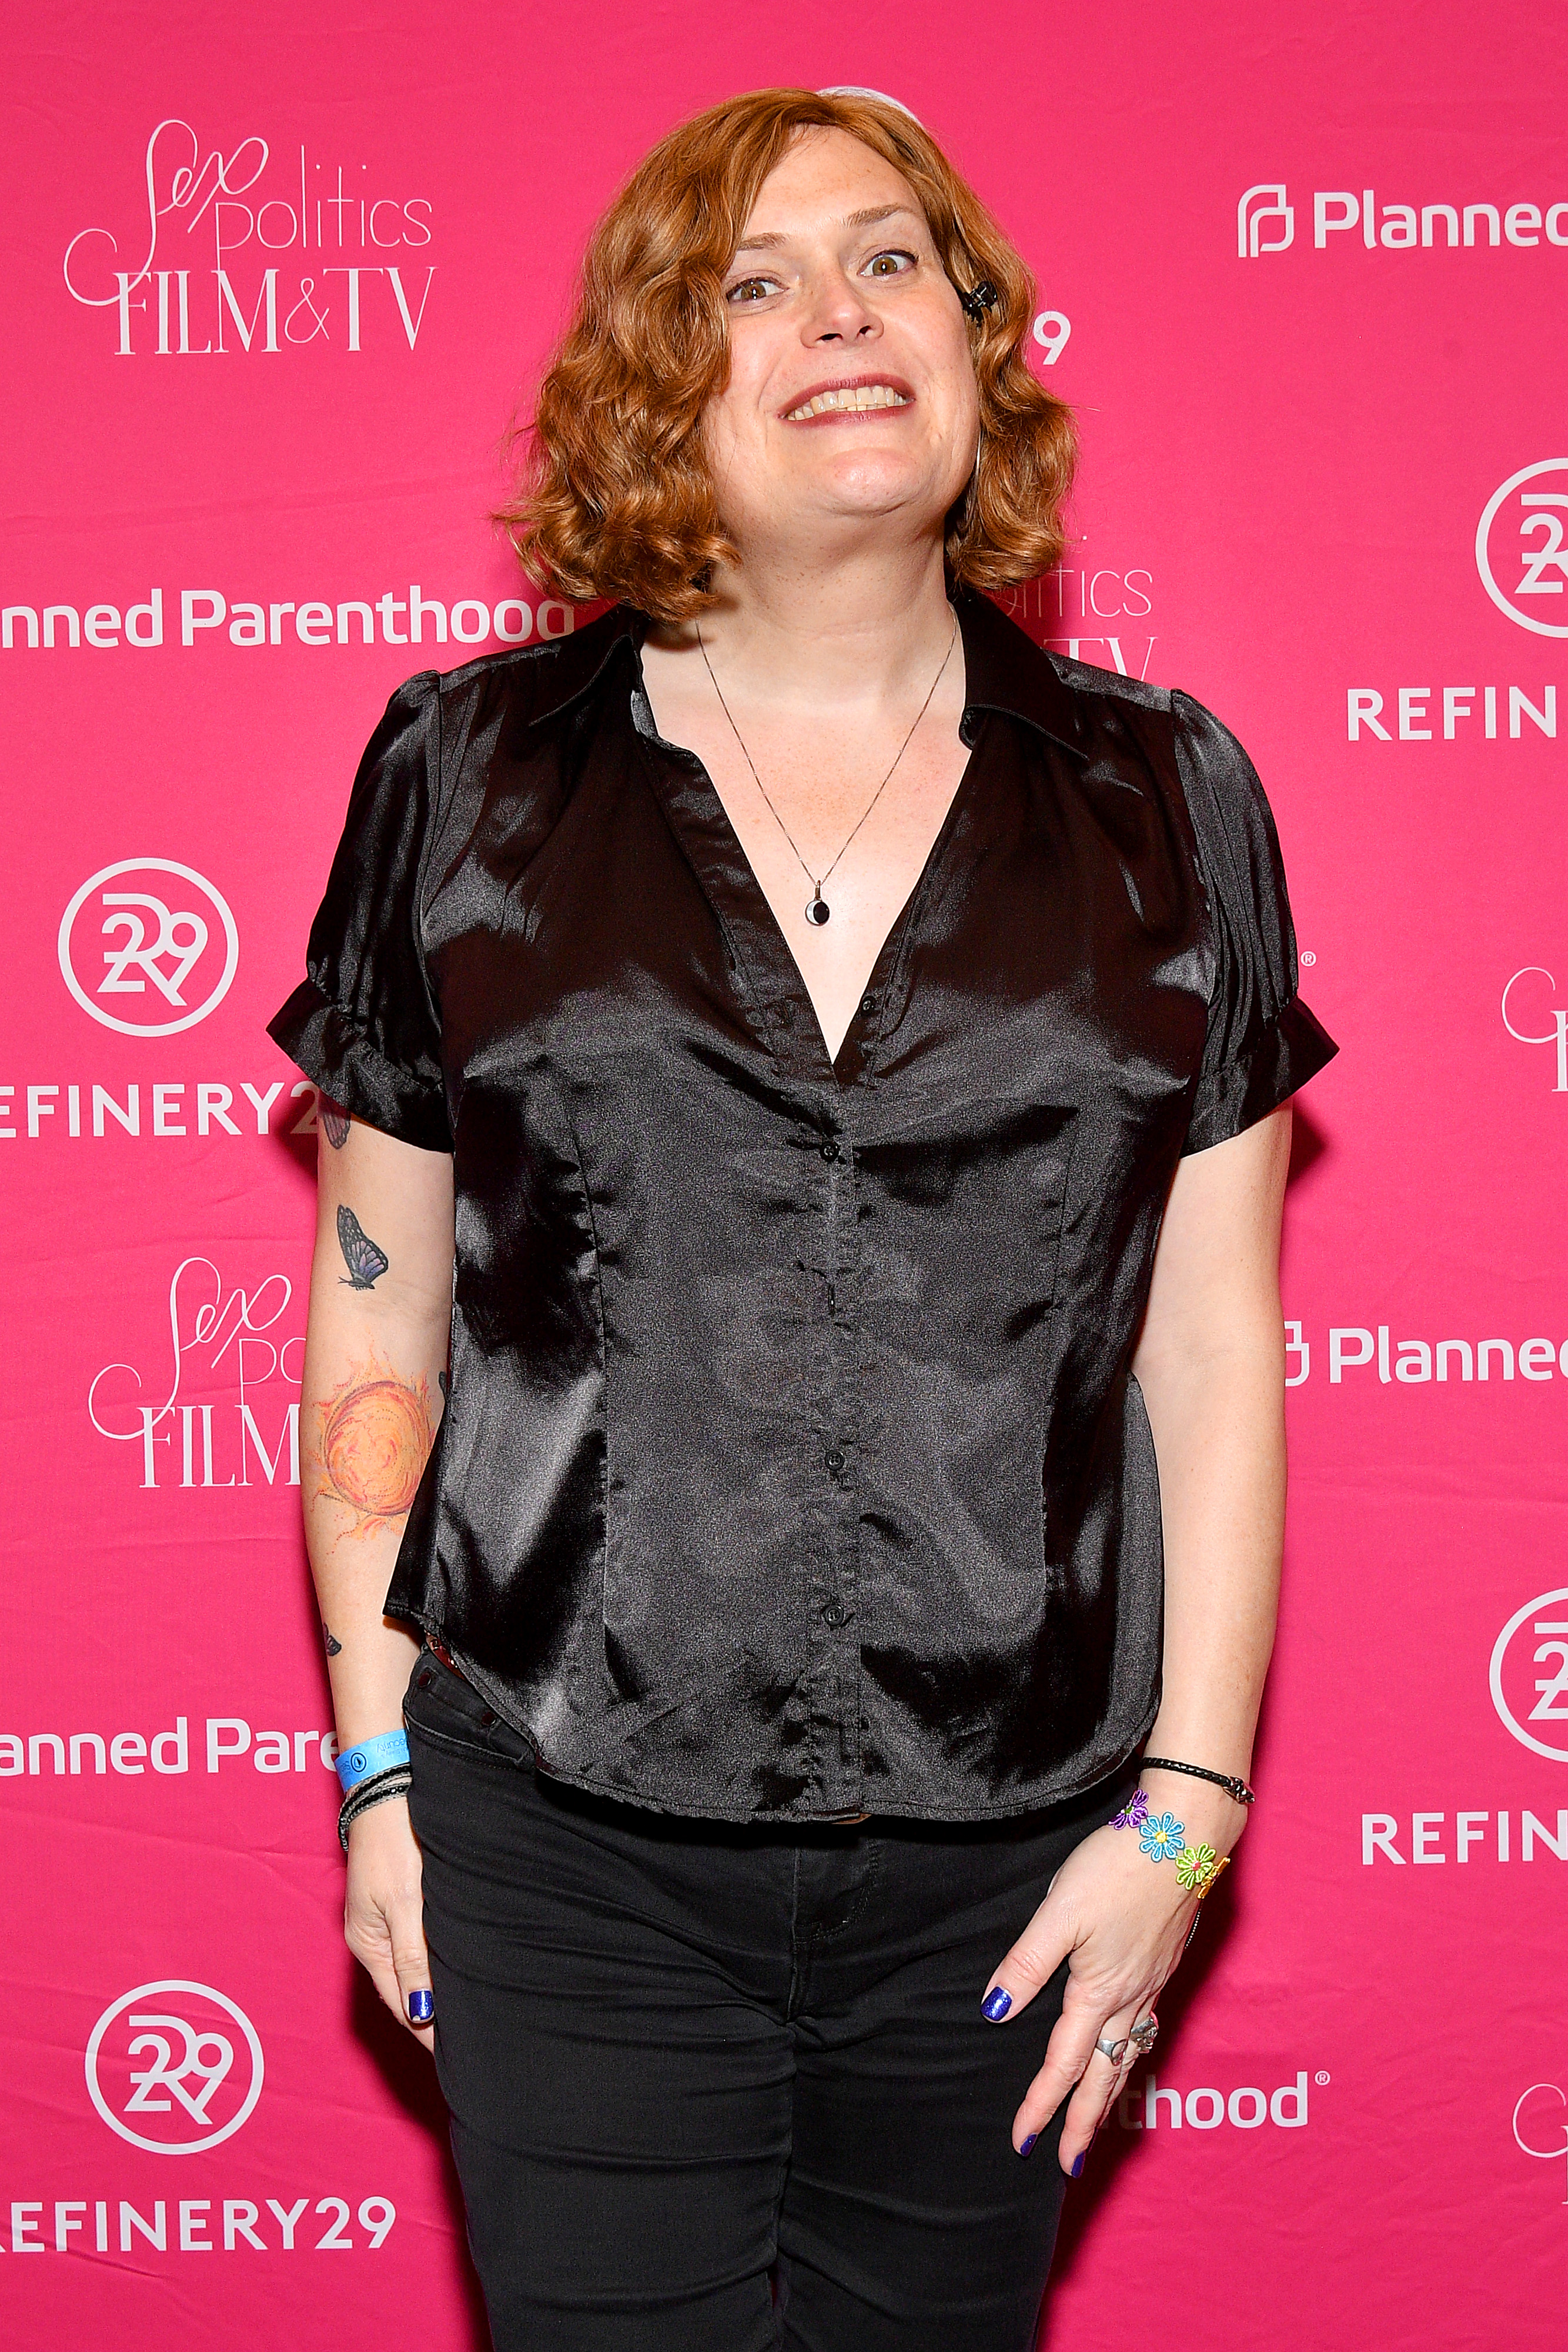 Lilly Wachowski asiste a la Recepción sobre Sexo, Política, Cine y TV de Planned Parenthood en Sundance el 26 de enero de 2020 en Park City, Utah. | Fuente: Getty Images